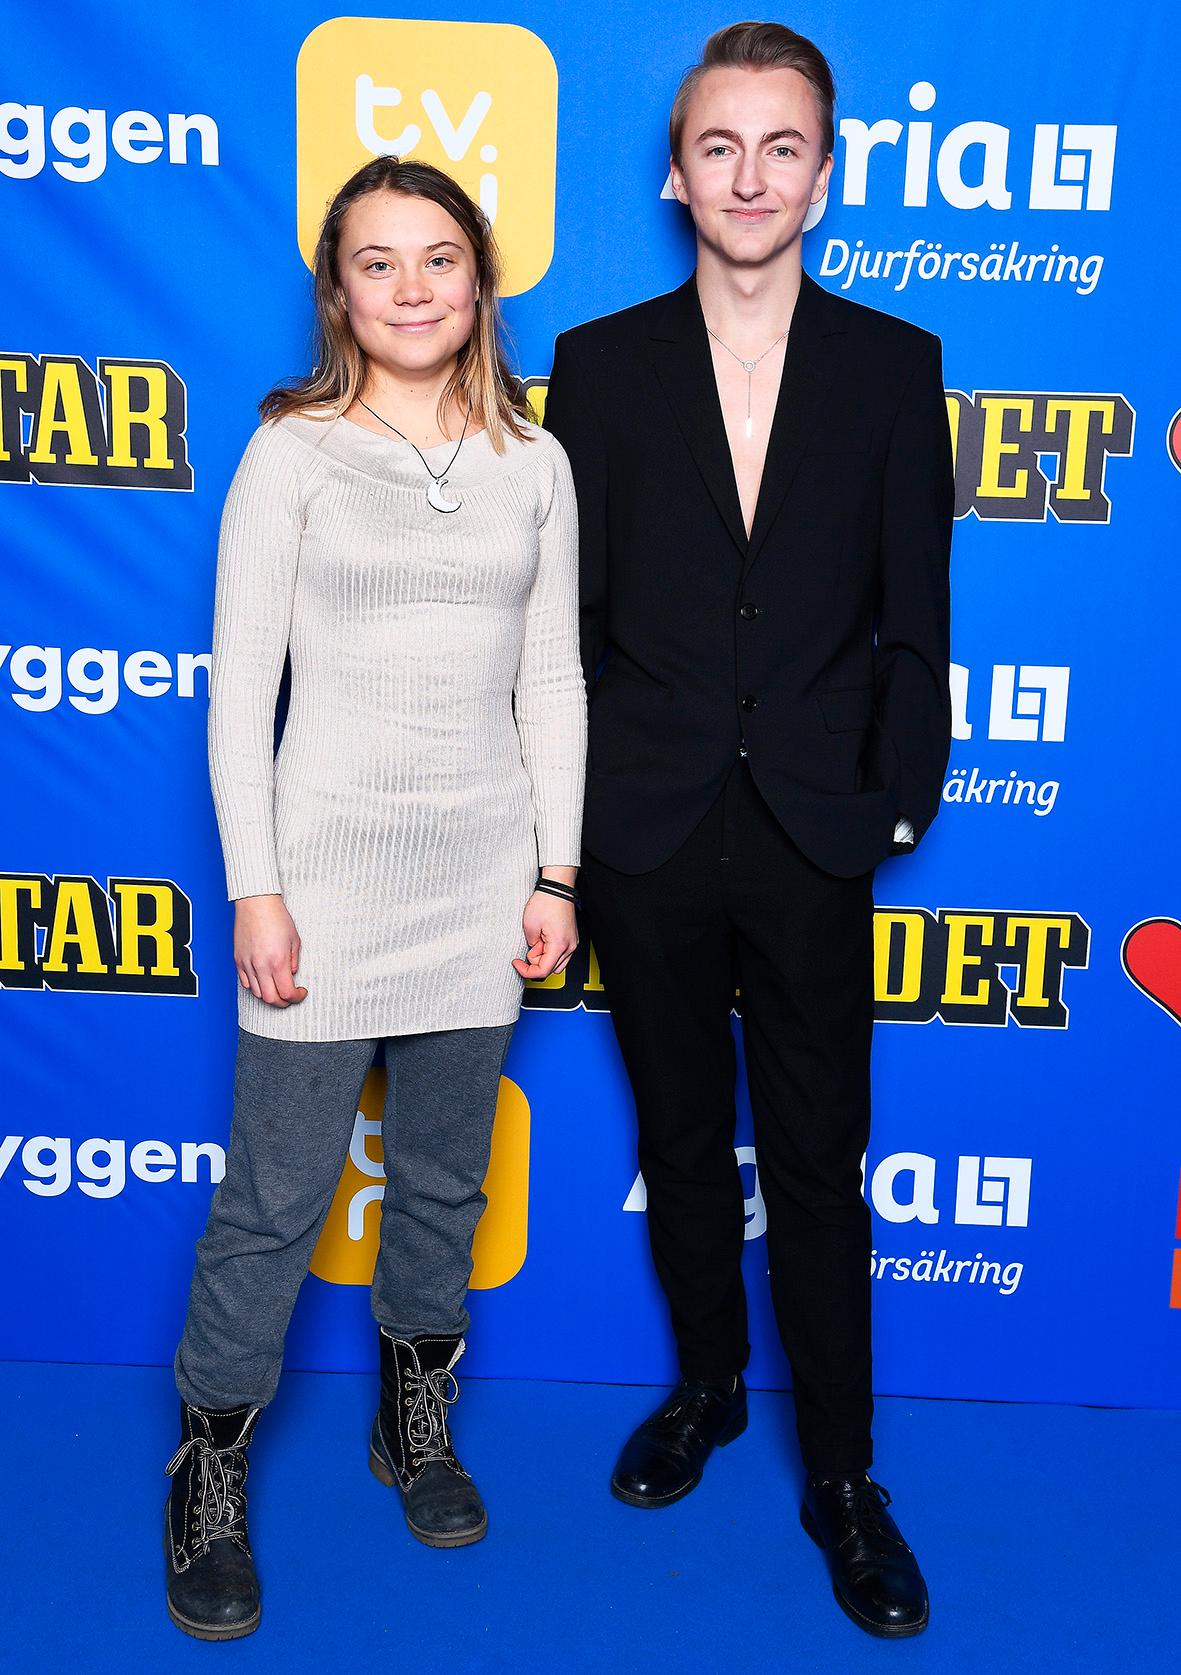 Kvällen till ära dök Greta Thunberg upp, här tillsammans med Tristan Lundberg.